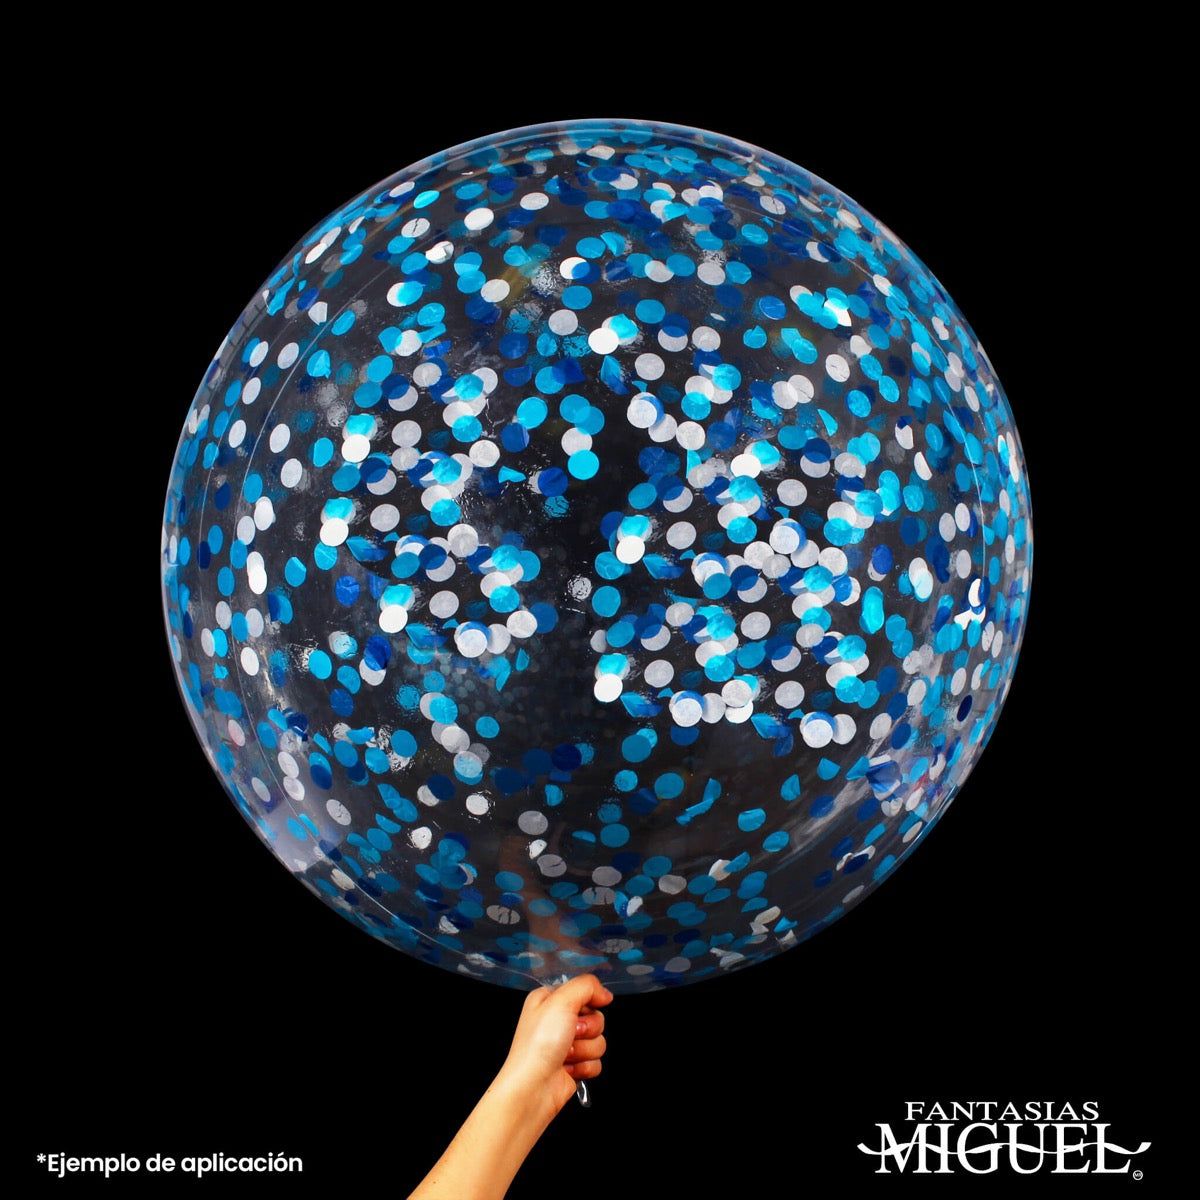 Globos Transparentes 30cm  Fantasias Miguel – Fantasías Miguel